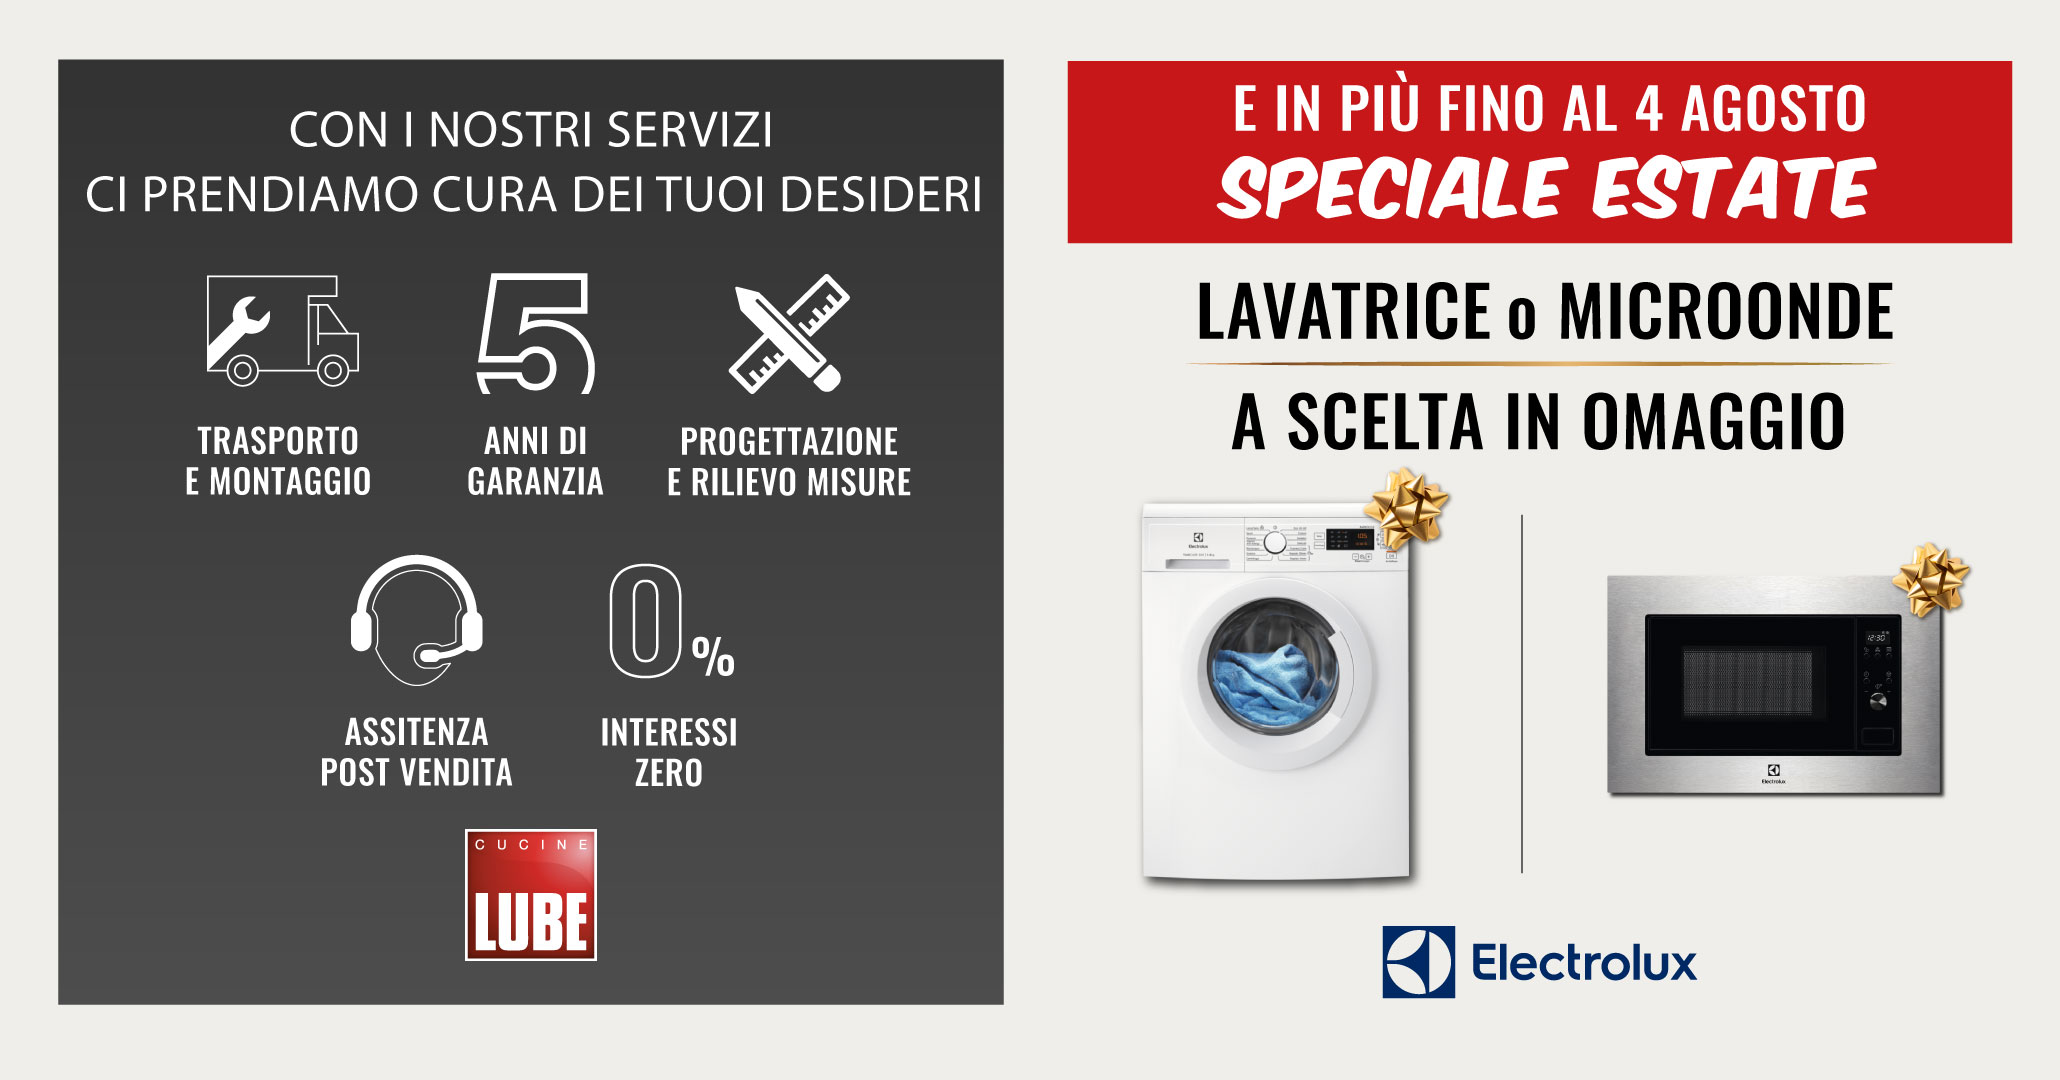 Nuova promozione sui modelli Cucine LUBE, in regalo la lavatrice o il microonde di Electrolux. Hai tempo fino al 04 agosto! - LUBE CREO Palombara Sabina (Roma)